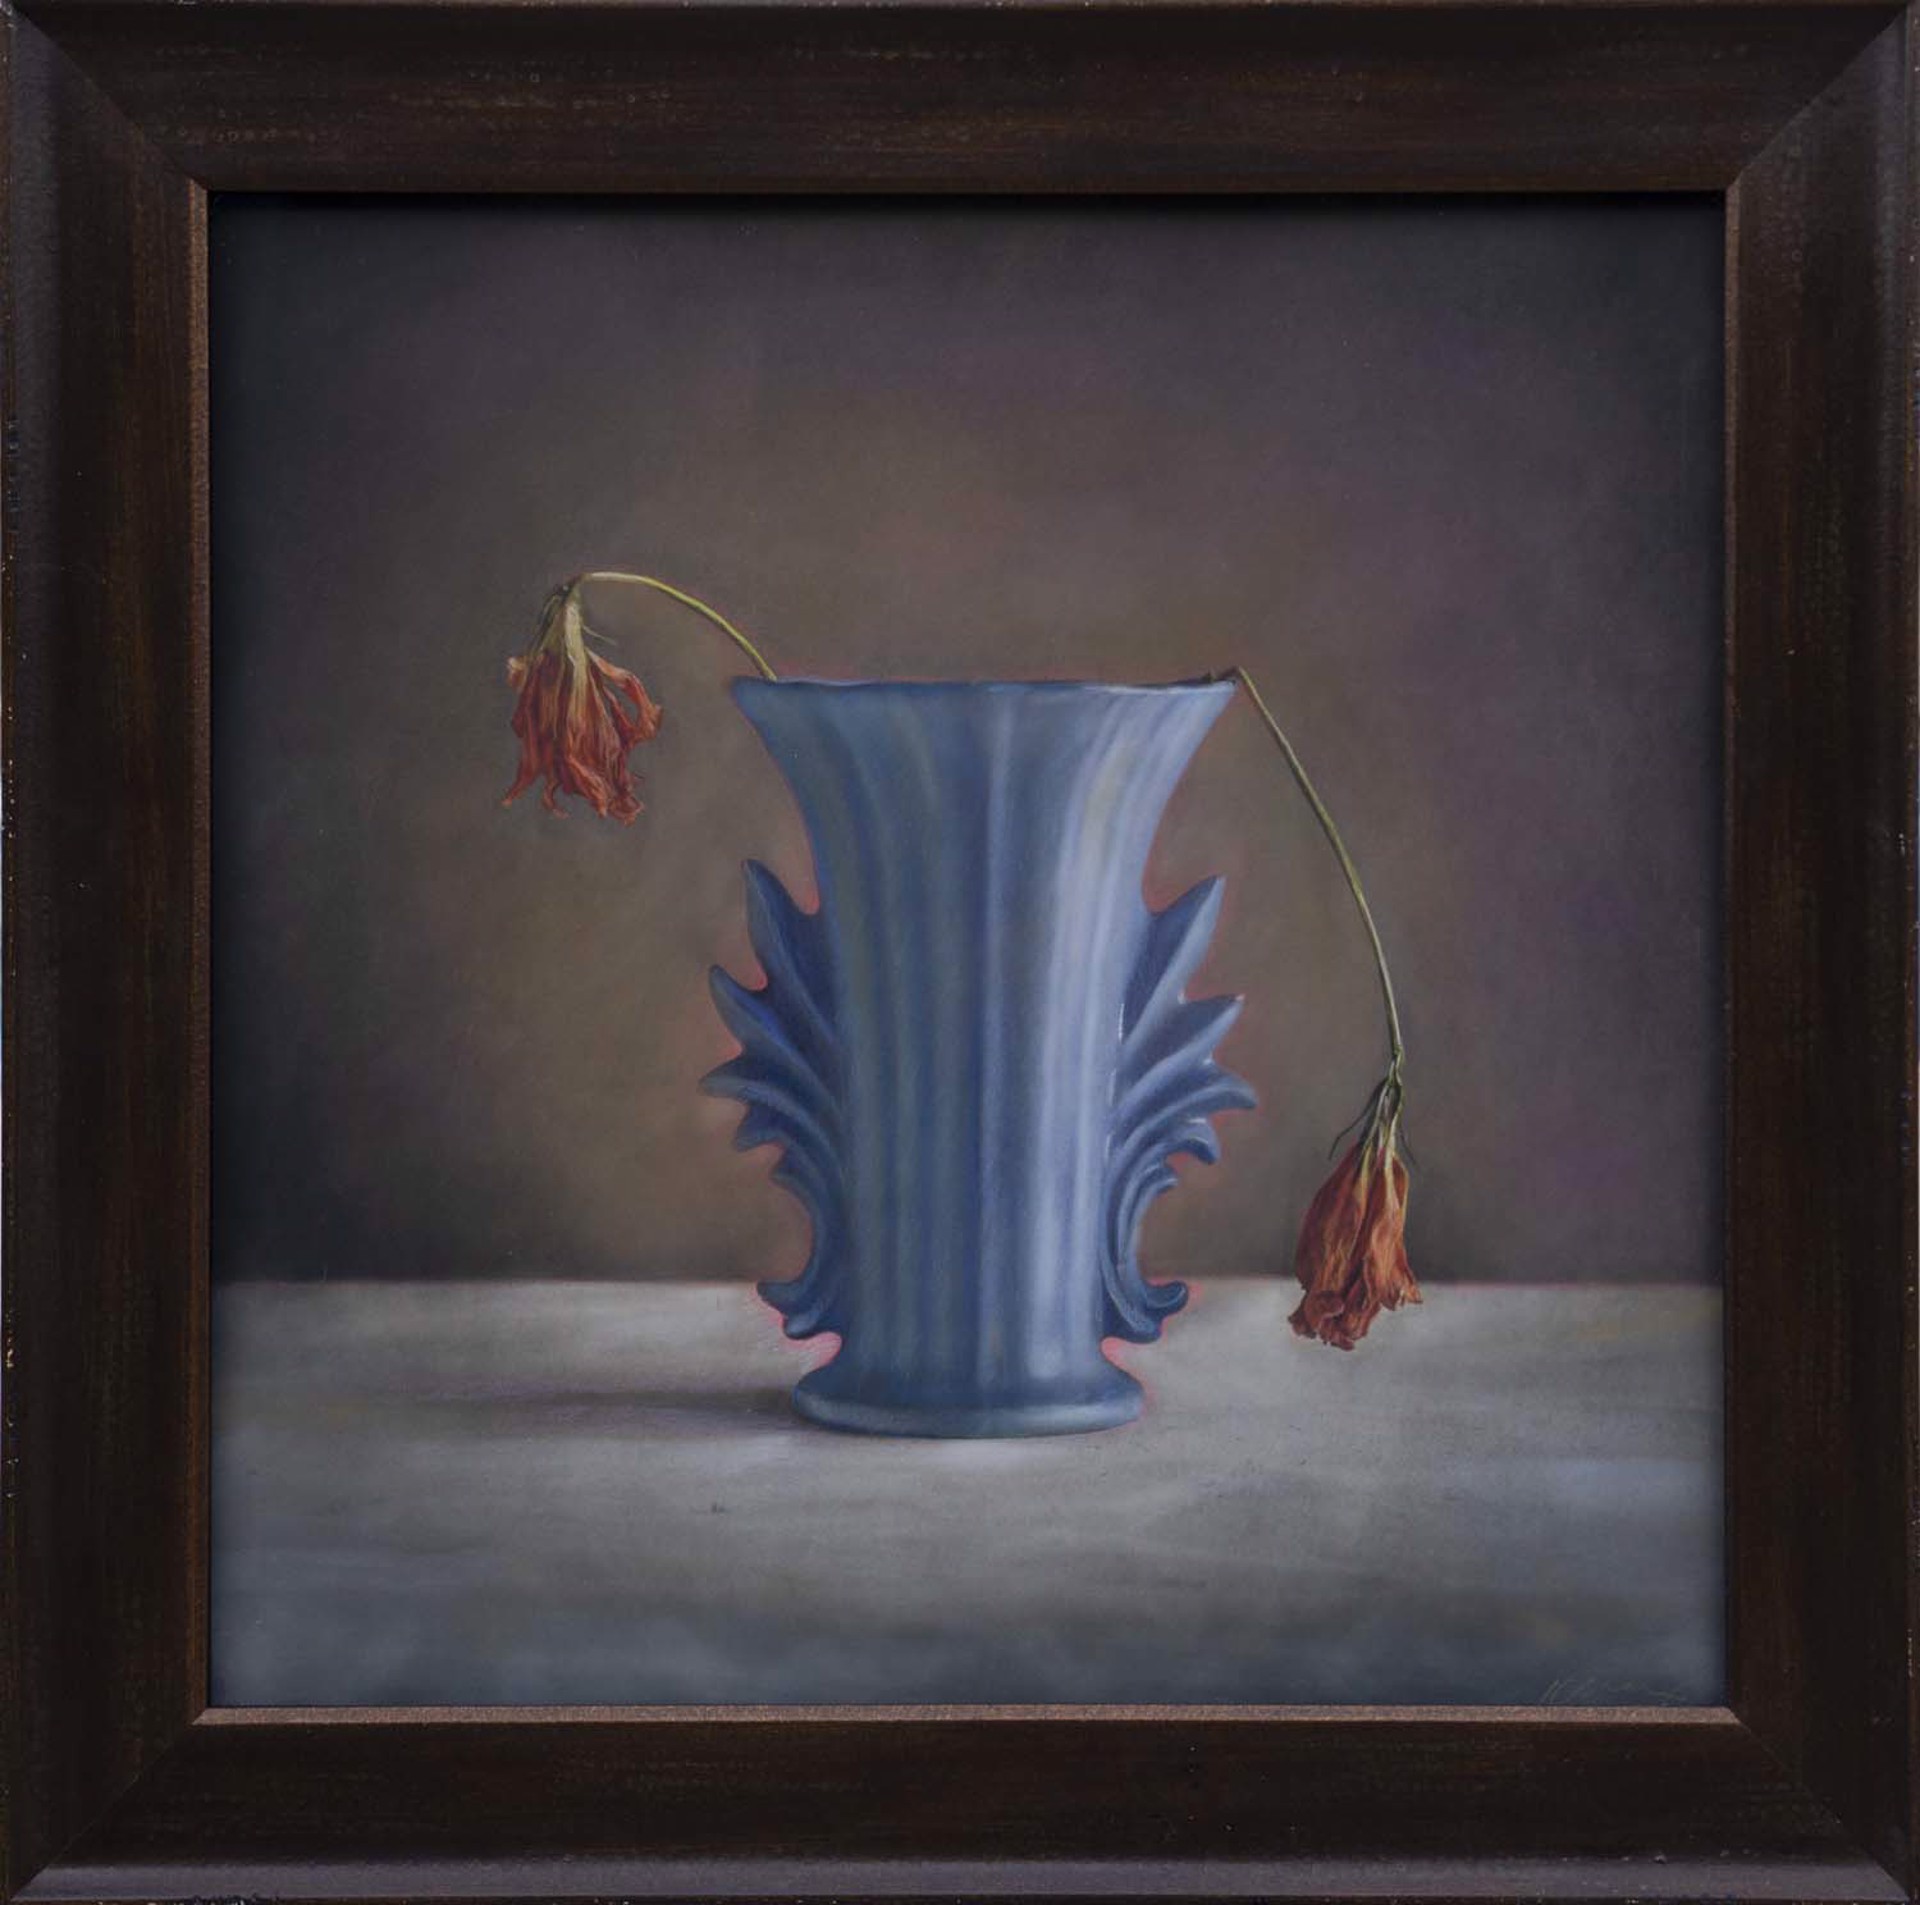 Blue Vase, Two Dead Flowers by Kate Breakey